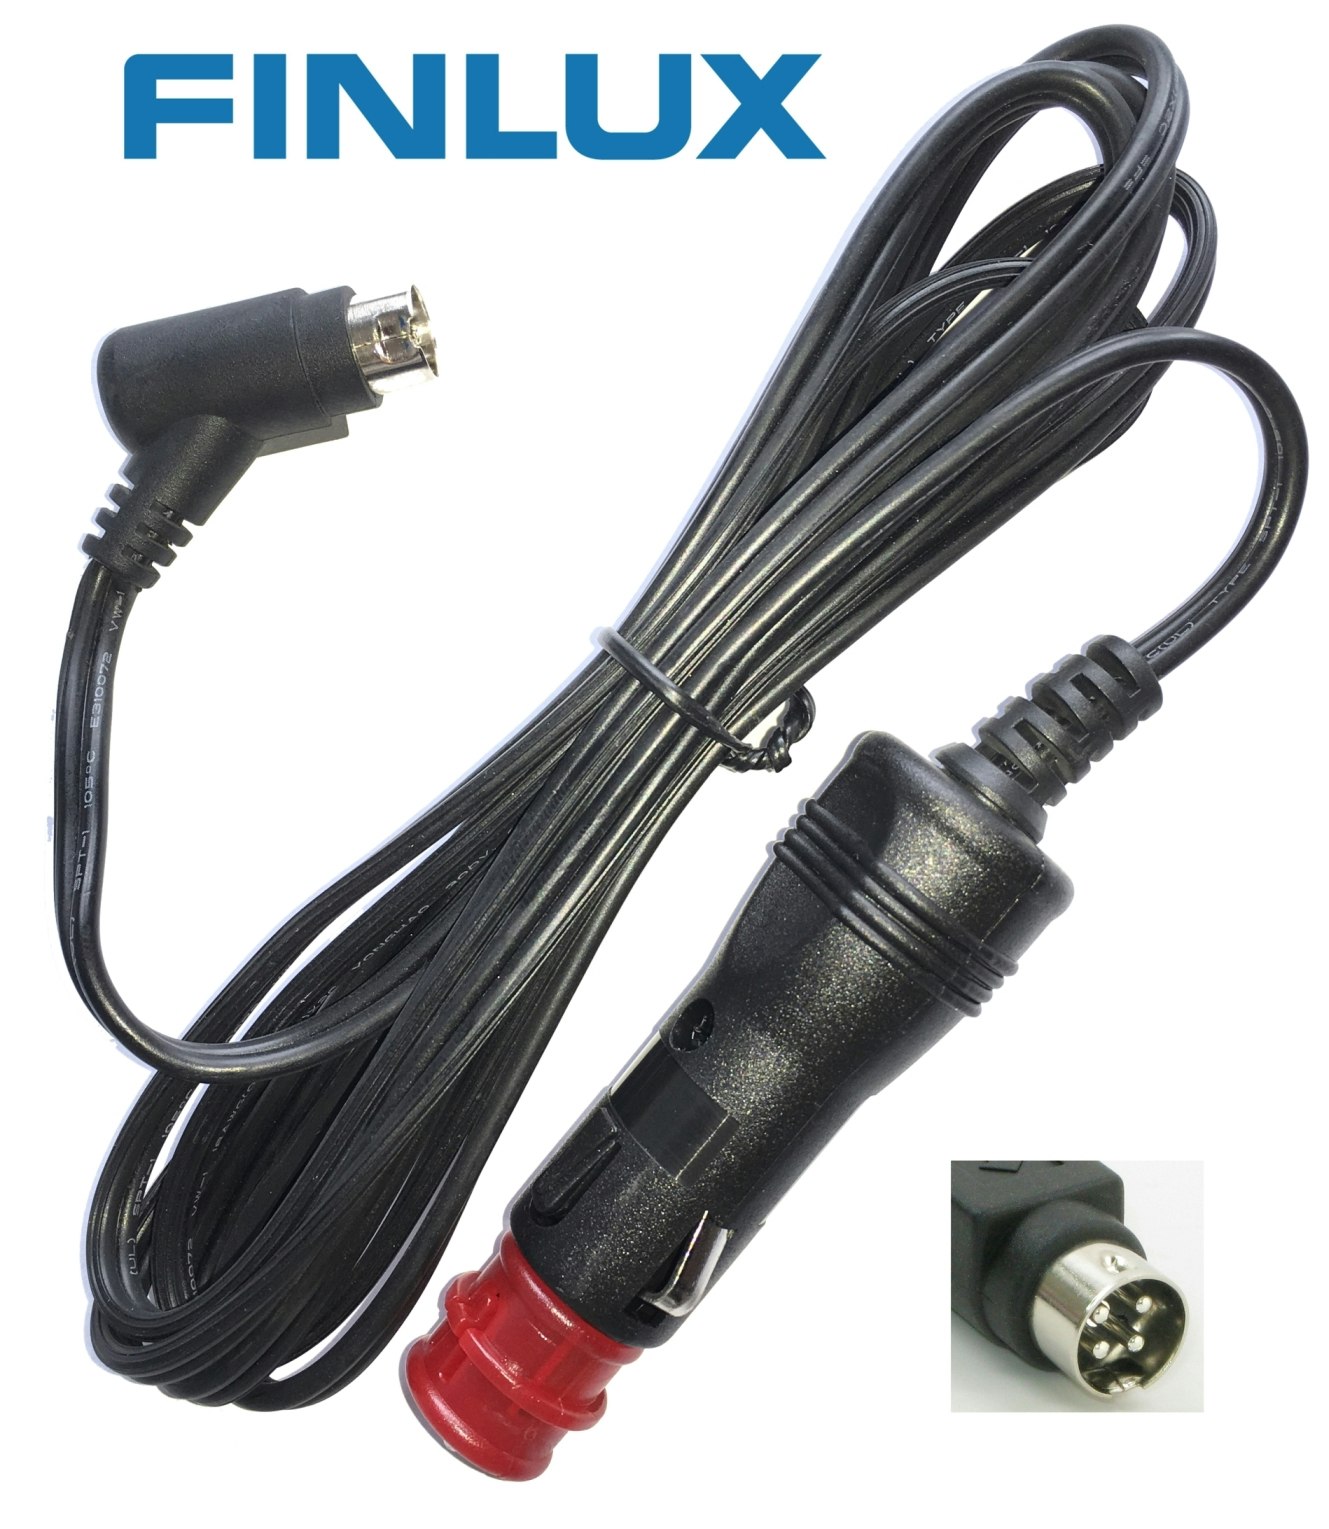 FINLUX 12V kabel 45 gr. vinkel 399700